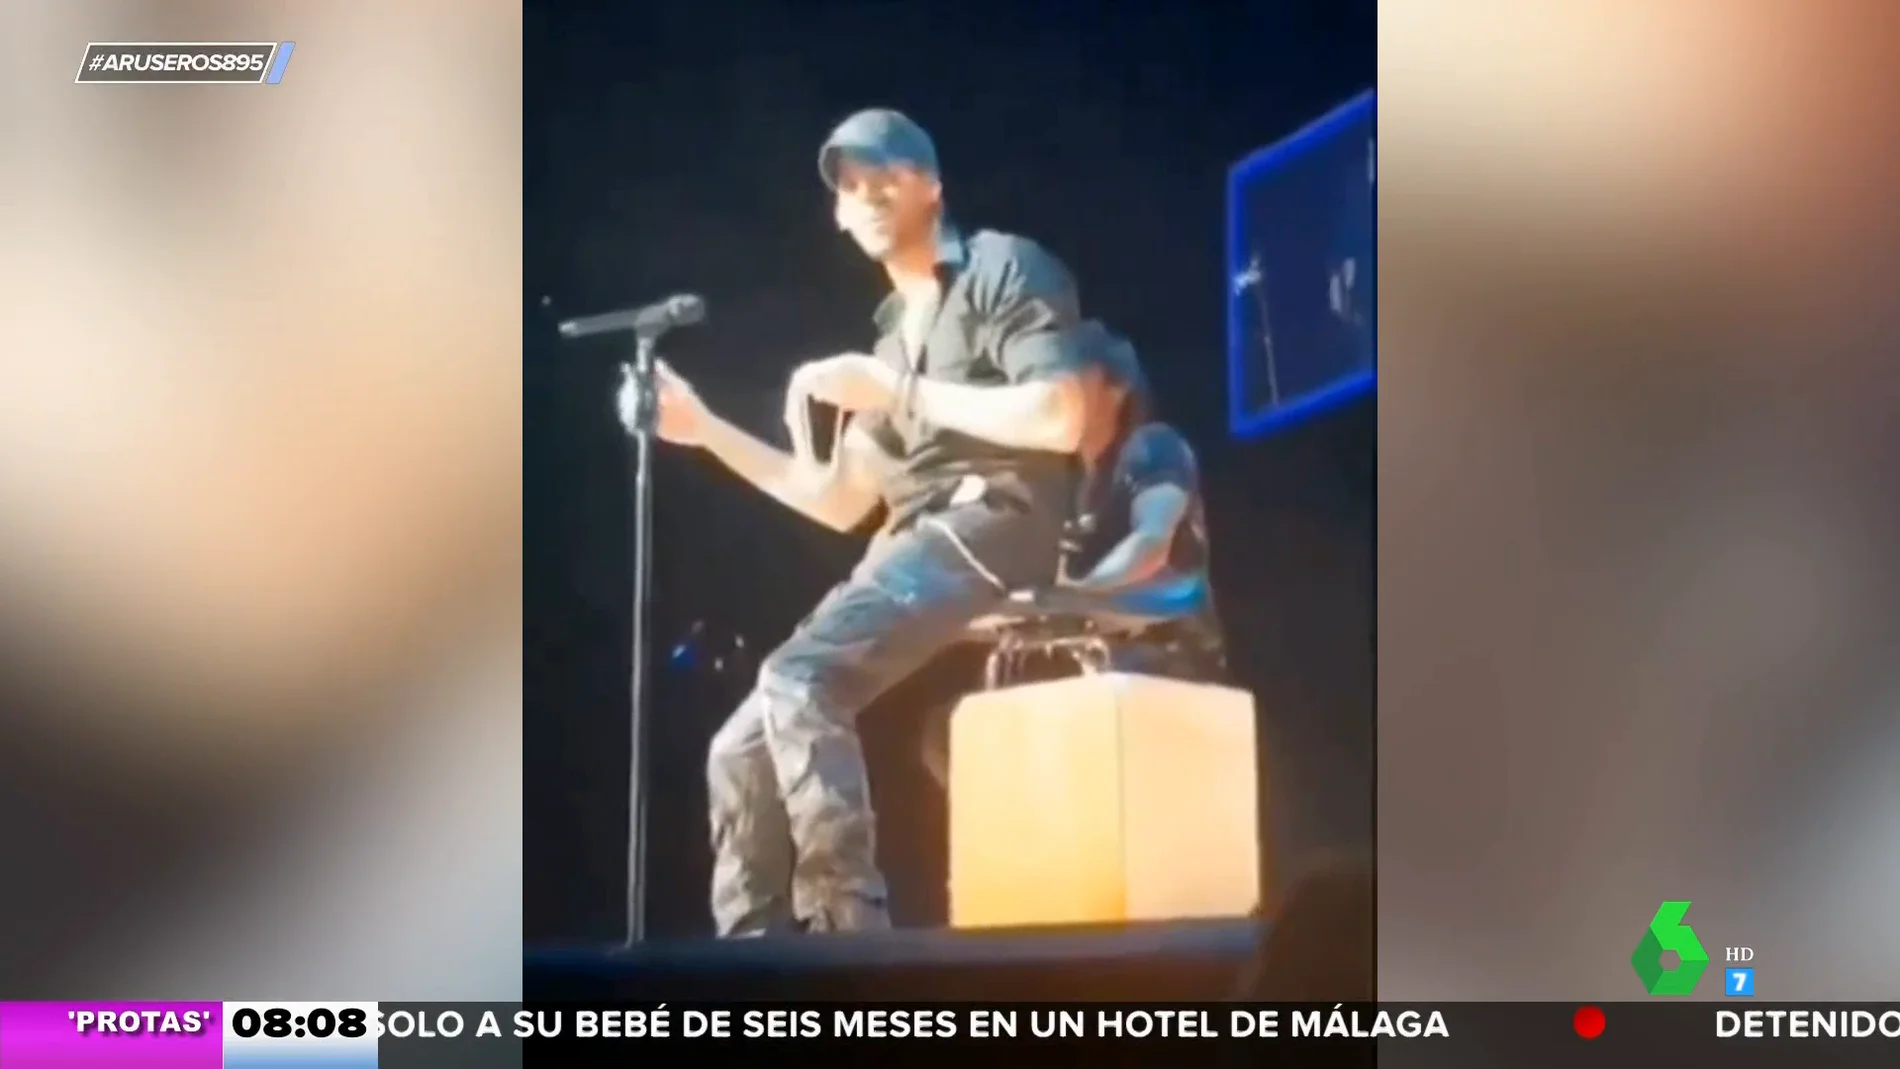 La reacción de Enrique Iglesias cuando le tiran un tanga al escenario en pleno concierto